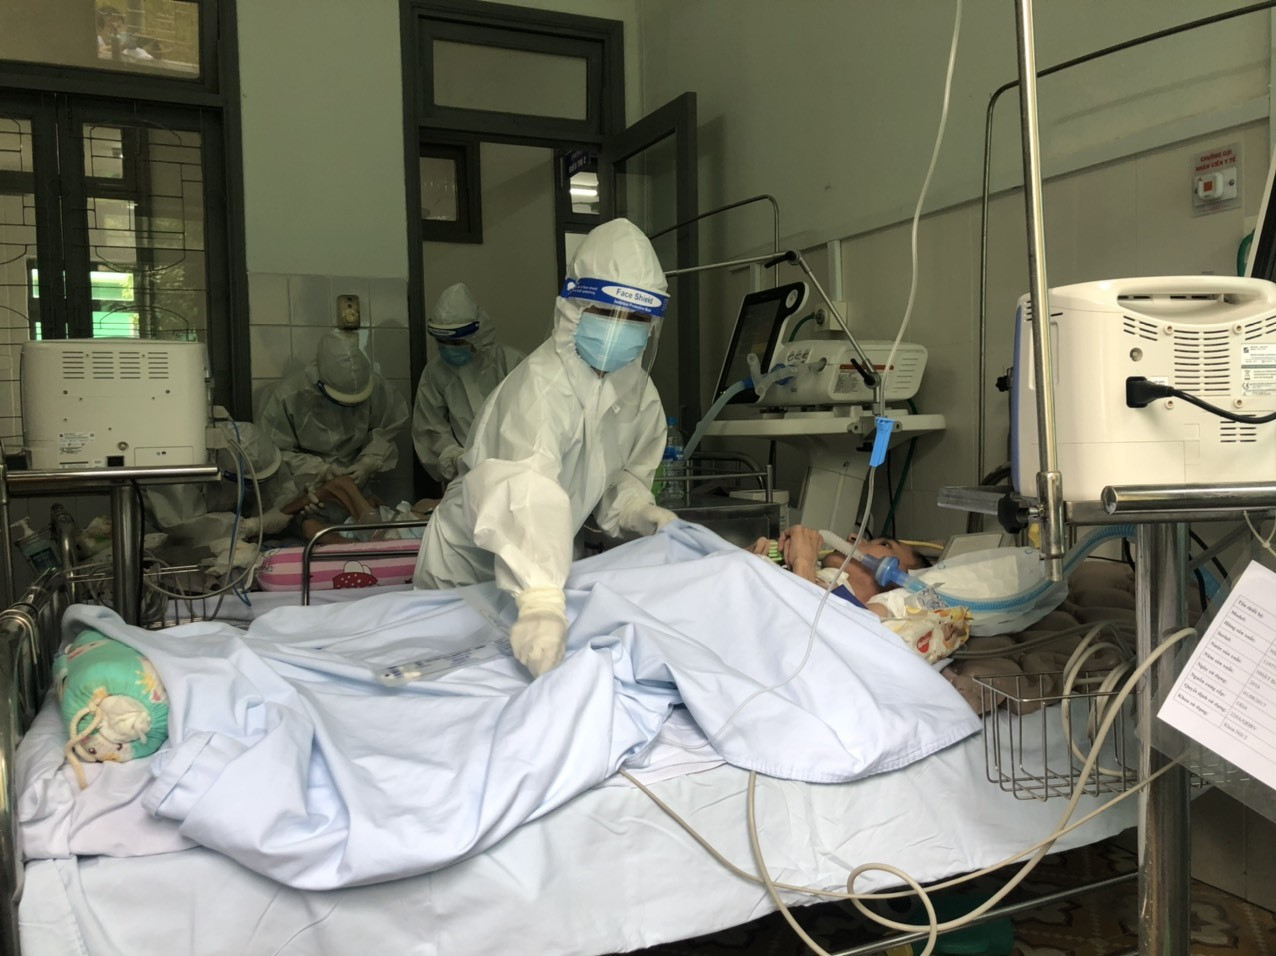 Đội ngũ nhân viên y tế của Bệnh viện Đa khoa miền núi phía Bắc Quảng Nam điều trị ban đầu cho các bệnh nhân Covid-19 trước khi chuyển đến Bệnh viện Đa khoa Trung ương Quảng Nam. Ảnh: T.MƯỜI